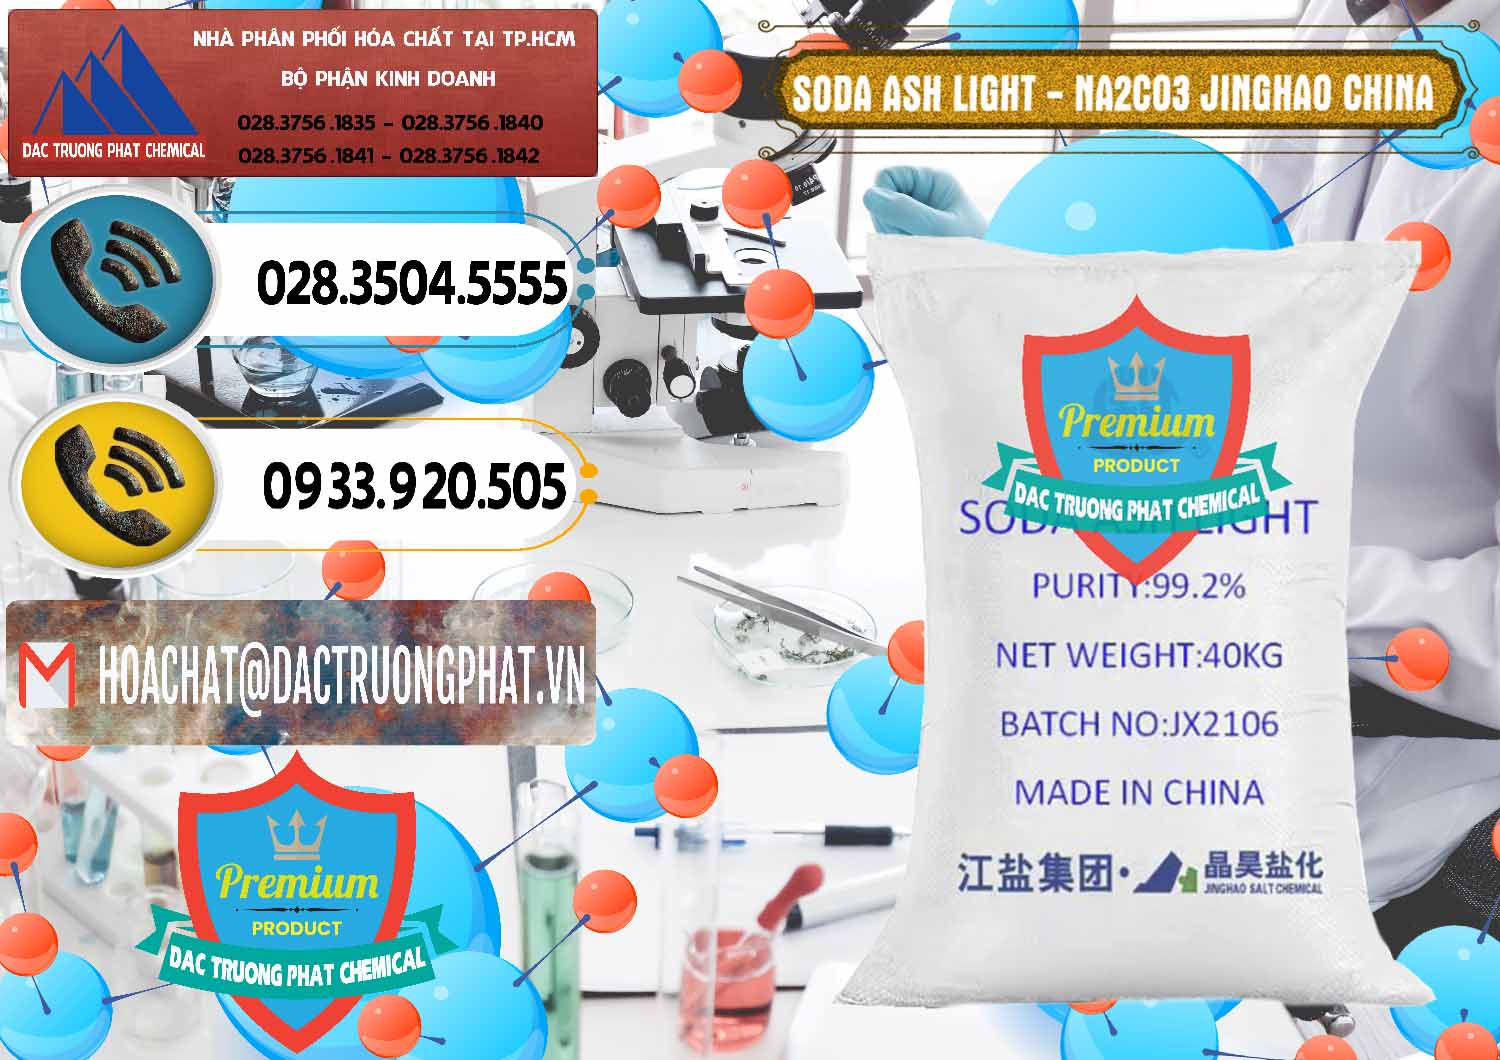 Chuyên bán và phân phối Soda Ash Light - NA2CO3 Jinghao Trung Quốc China - 0339 - Nơi cung cấp ( phân phối ) hóa chất tại TP.HCM - hoachatdetnhuom.vn